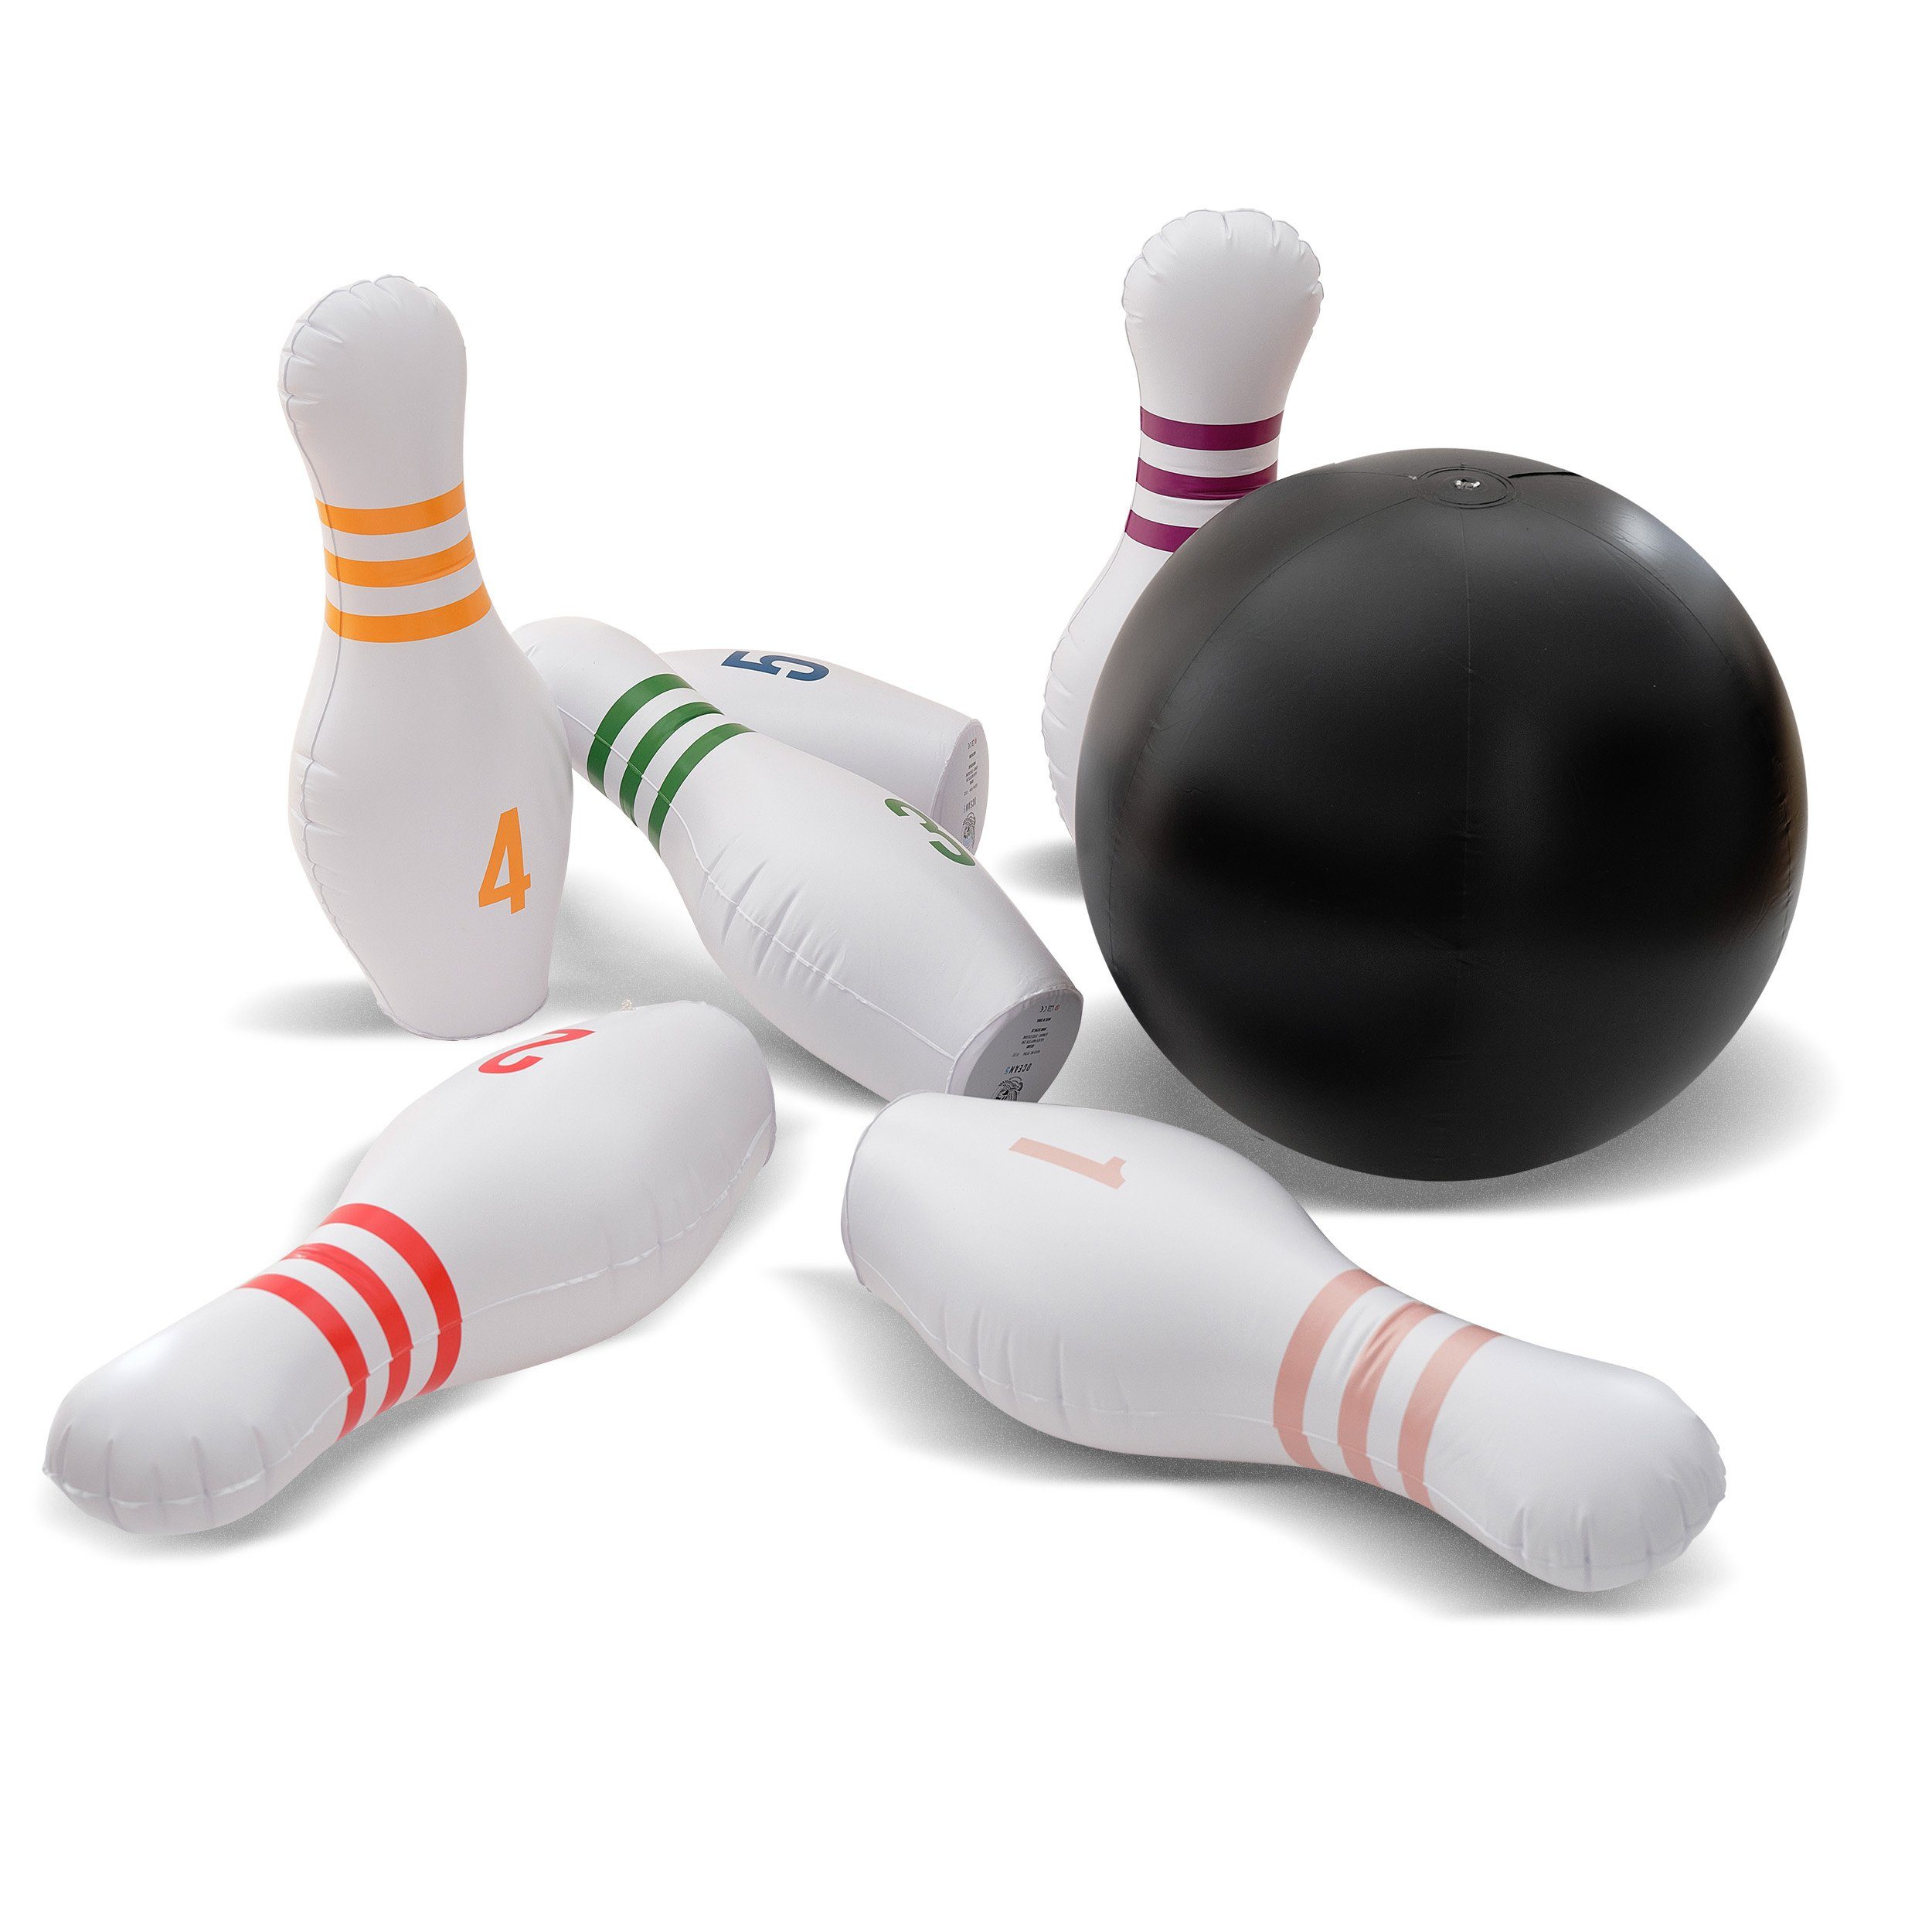 Ocean5 Spiel, Familienspiel XXL Bowling-Spiel Aufblasbares Kegeln-Set, für Kinder - 1 Ball mit 6 Pins